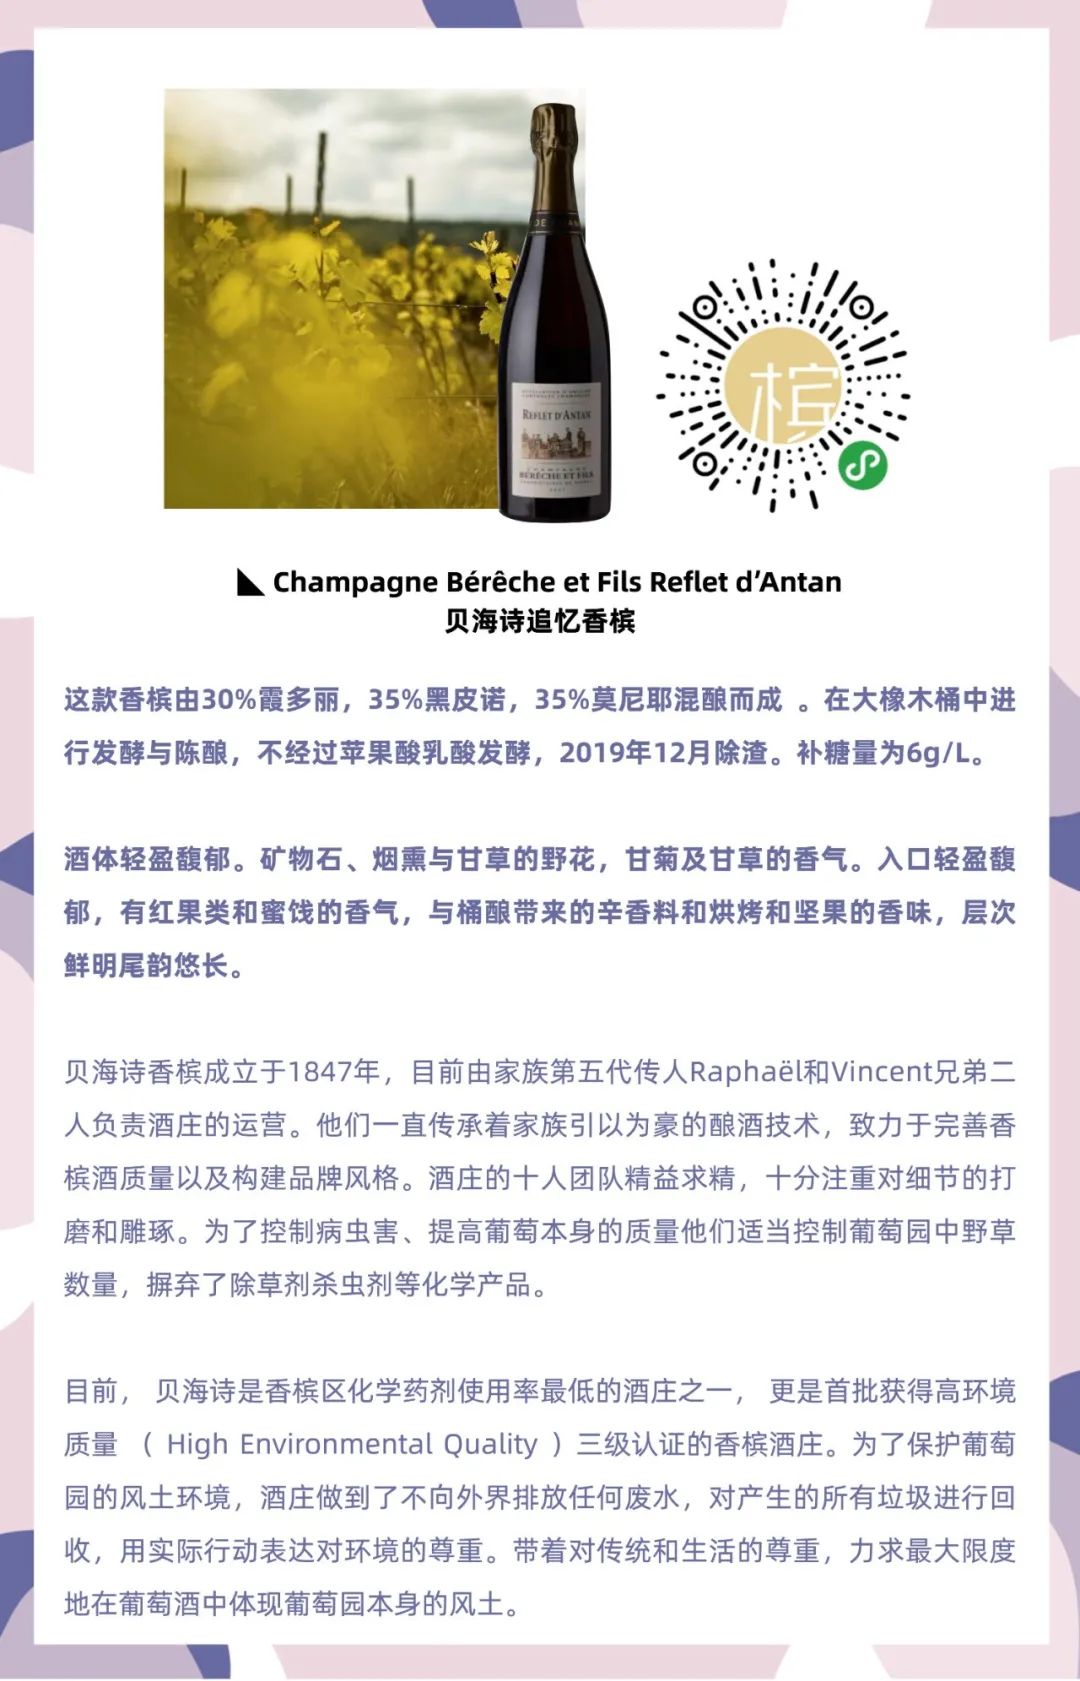 11.18 北京 | Lei ⎡回归⎦香槟晚宴·止观小馆